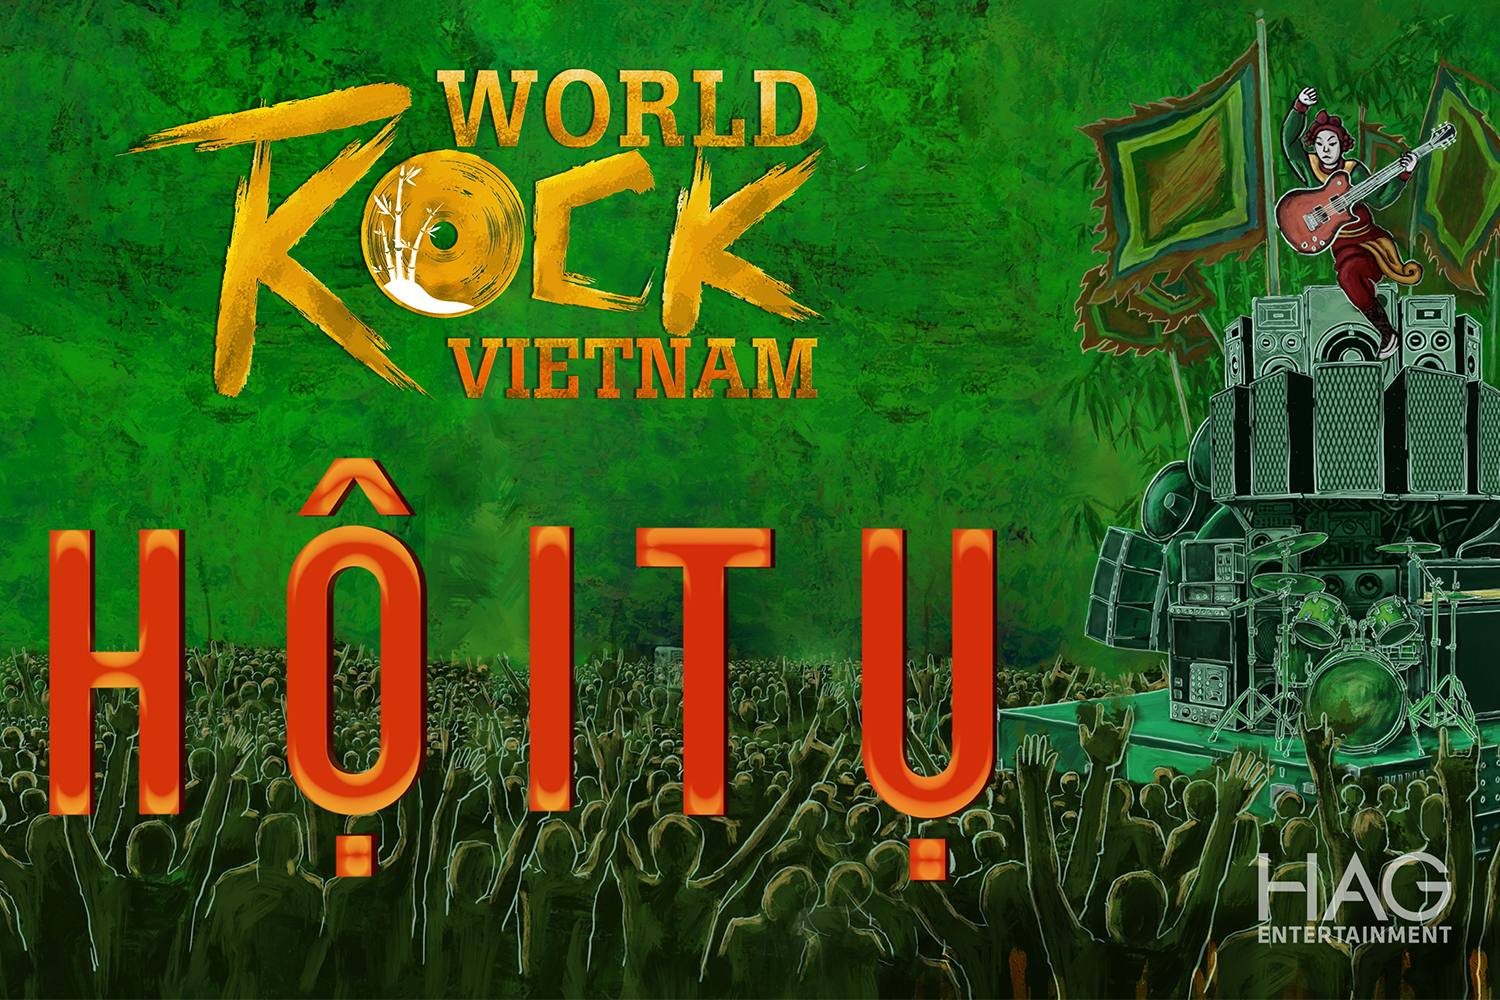 Harpers Bazaar world rock Vietnam 02 - Lễ hội nhạc Rock quốc tế tại TP. HCM chính thức khởi động